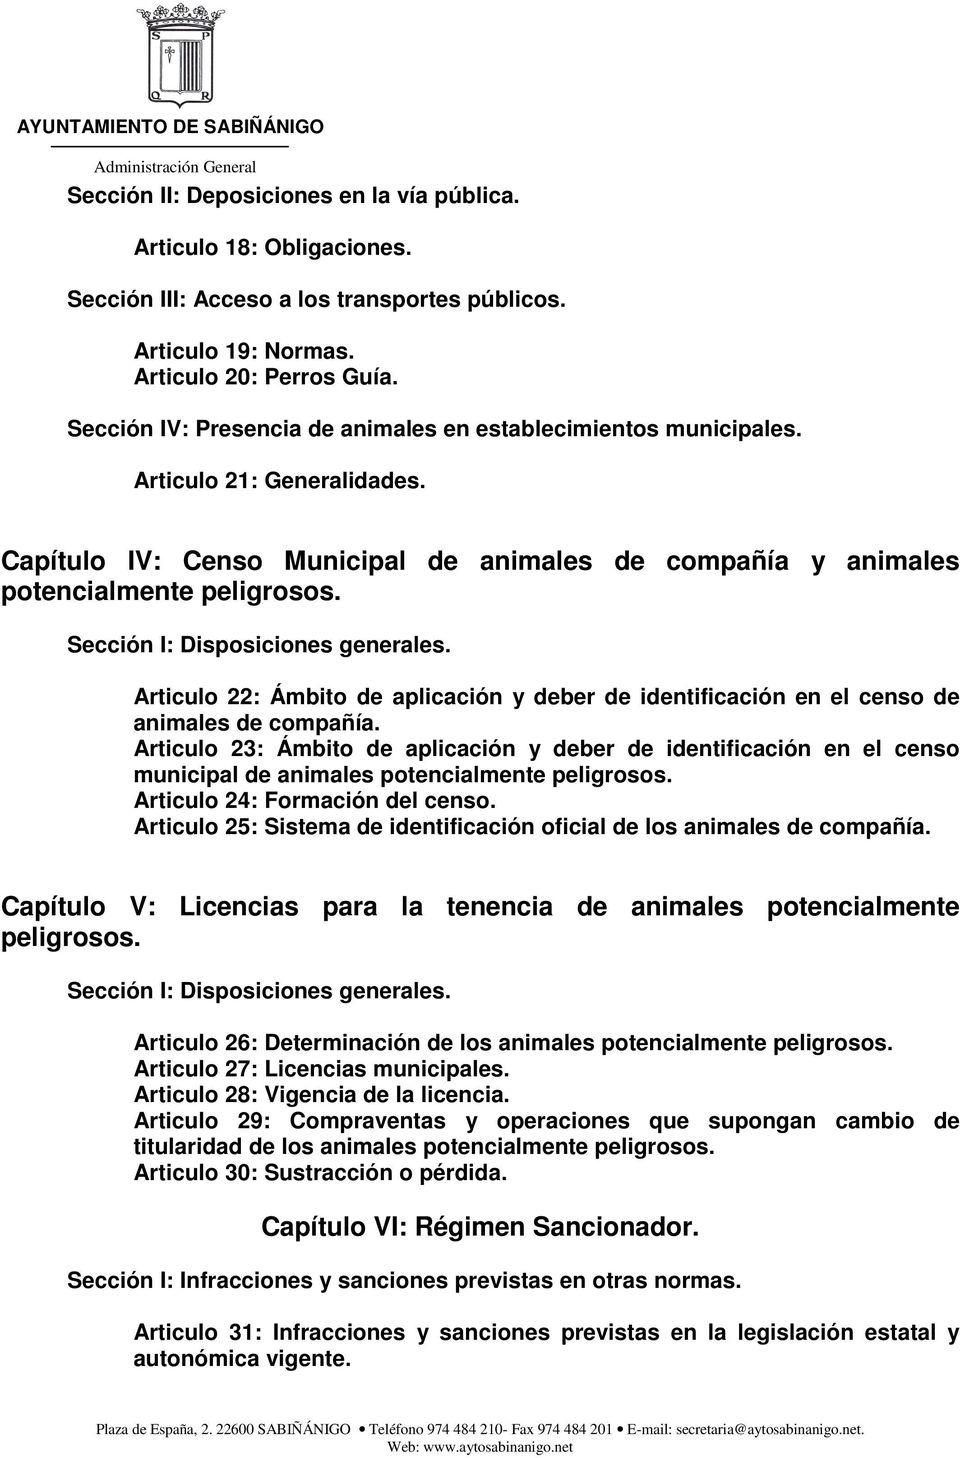 Sección I: Disposiciones generales. Articulo 22: Ámbito de aplicación y deber de identificación en el censo de animales de compañía.